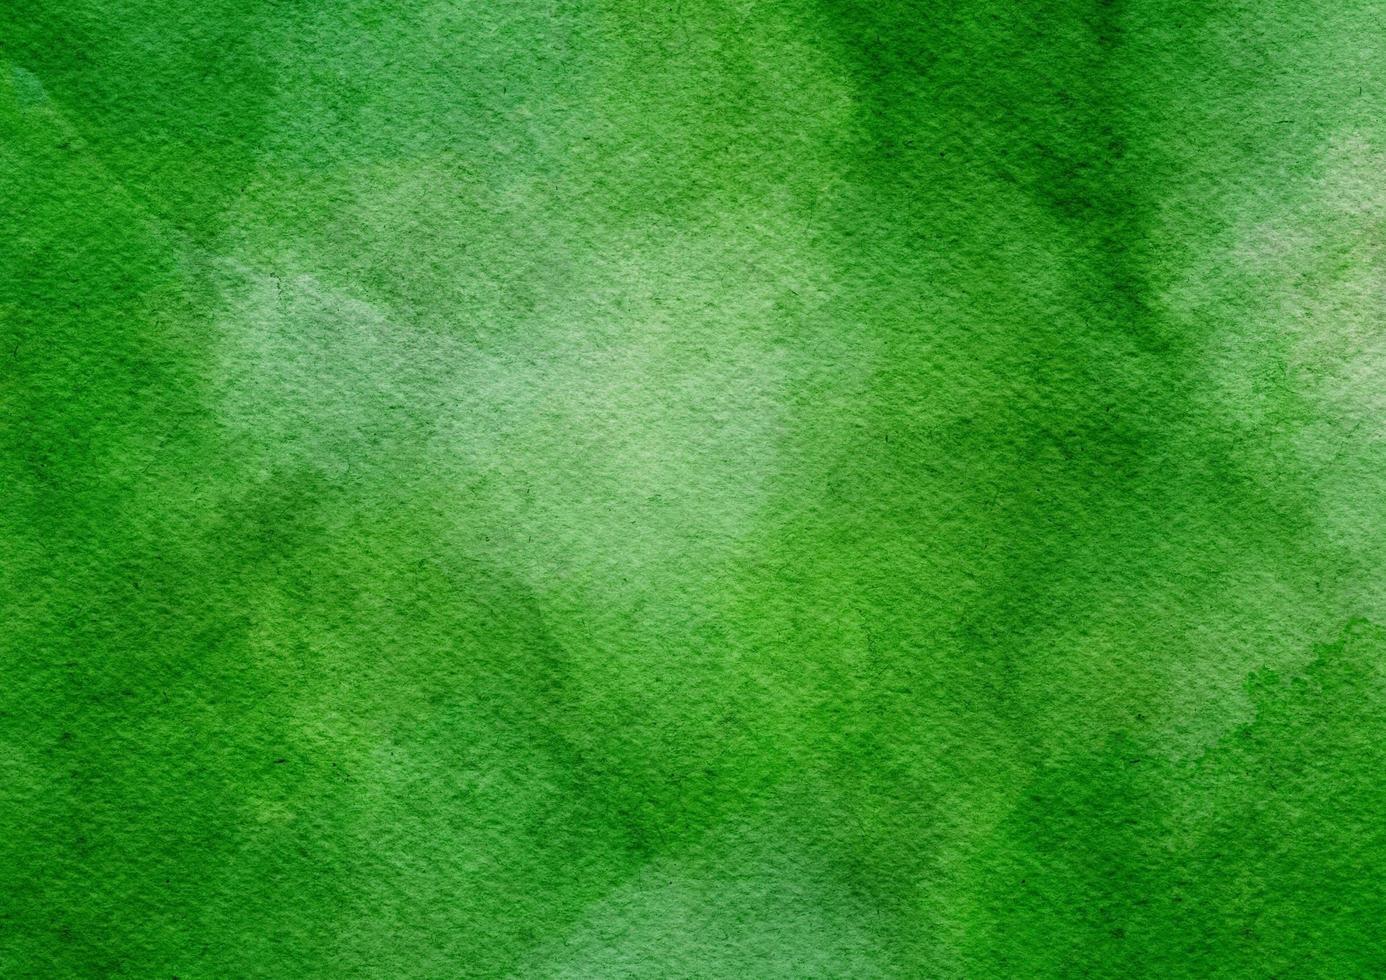 grüner aquarellschmerz auf papierbeschaffenheit, schöner hintergrund mit fleckaquarell foto